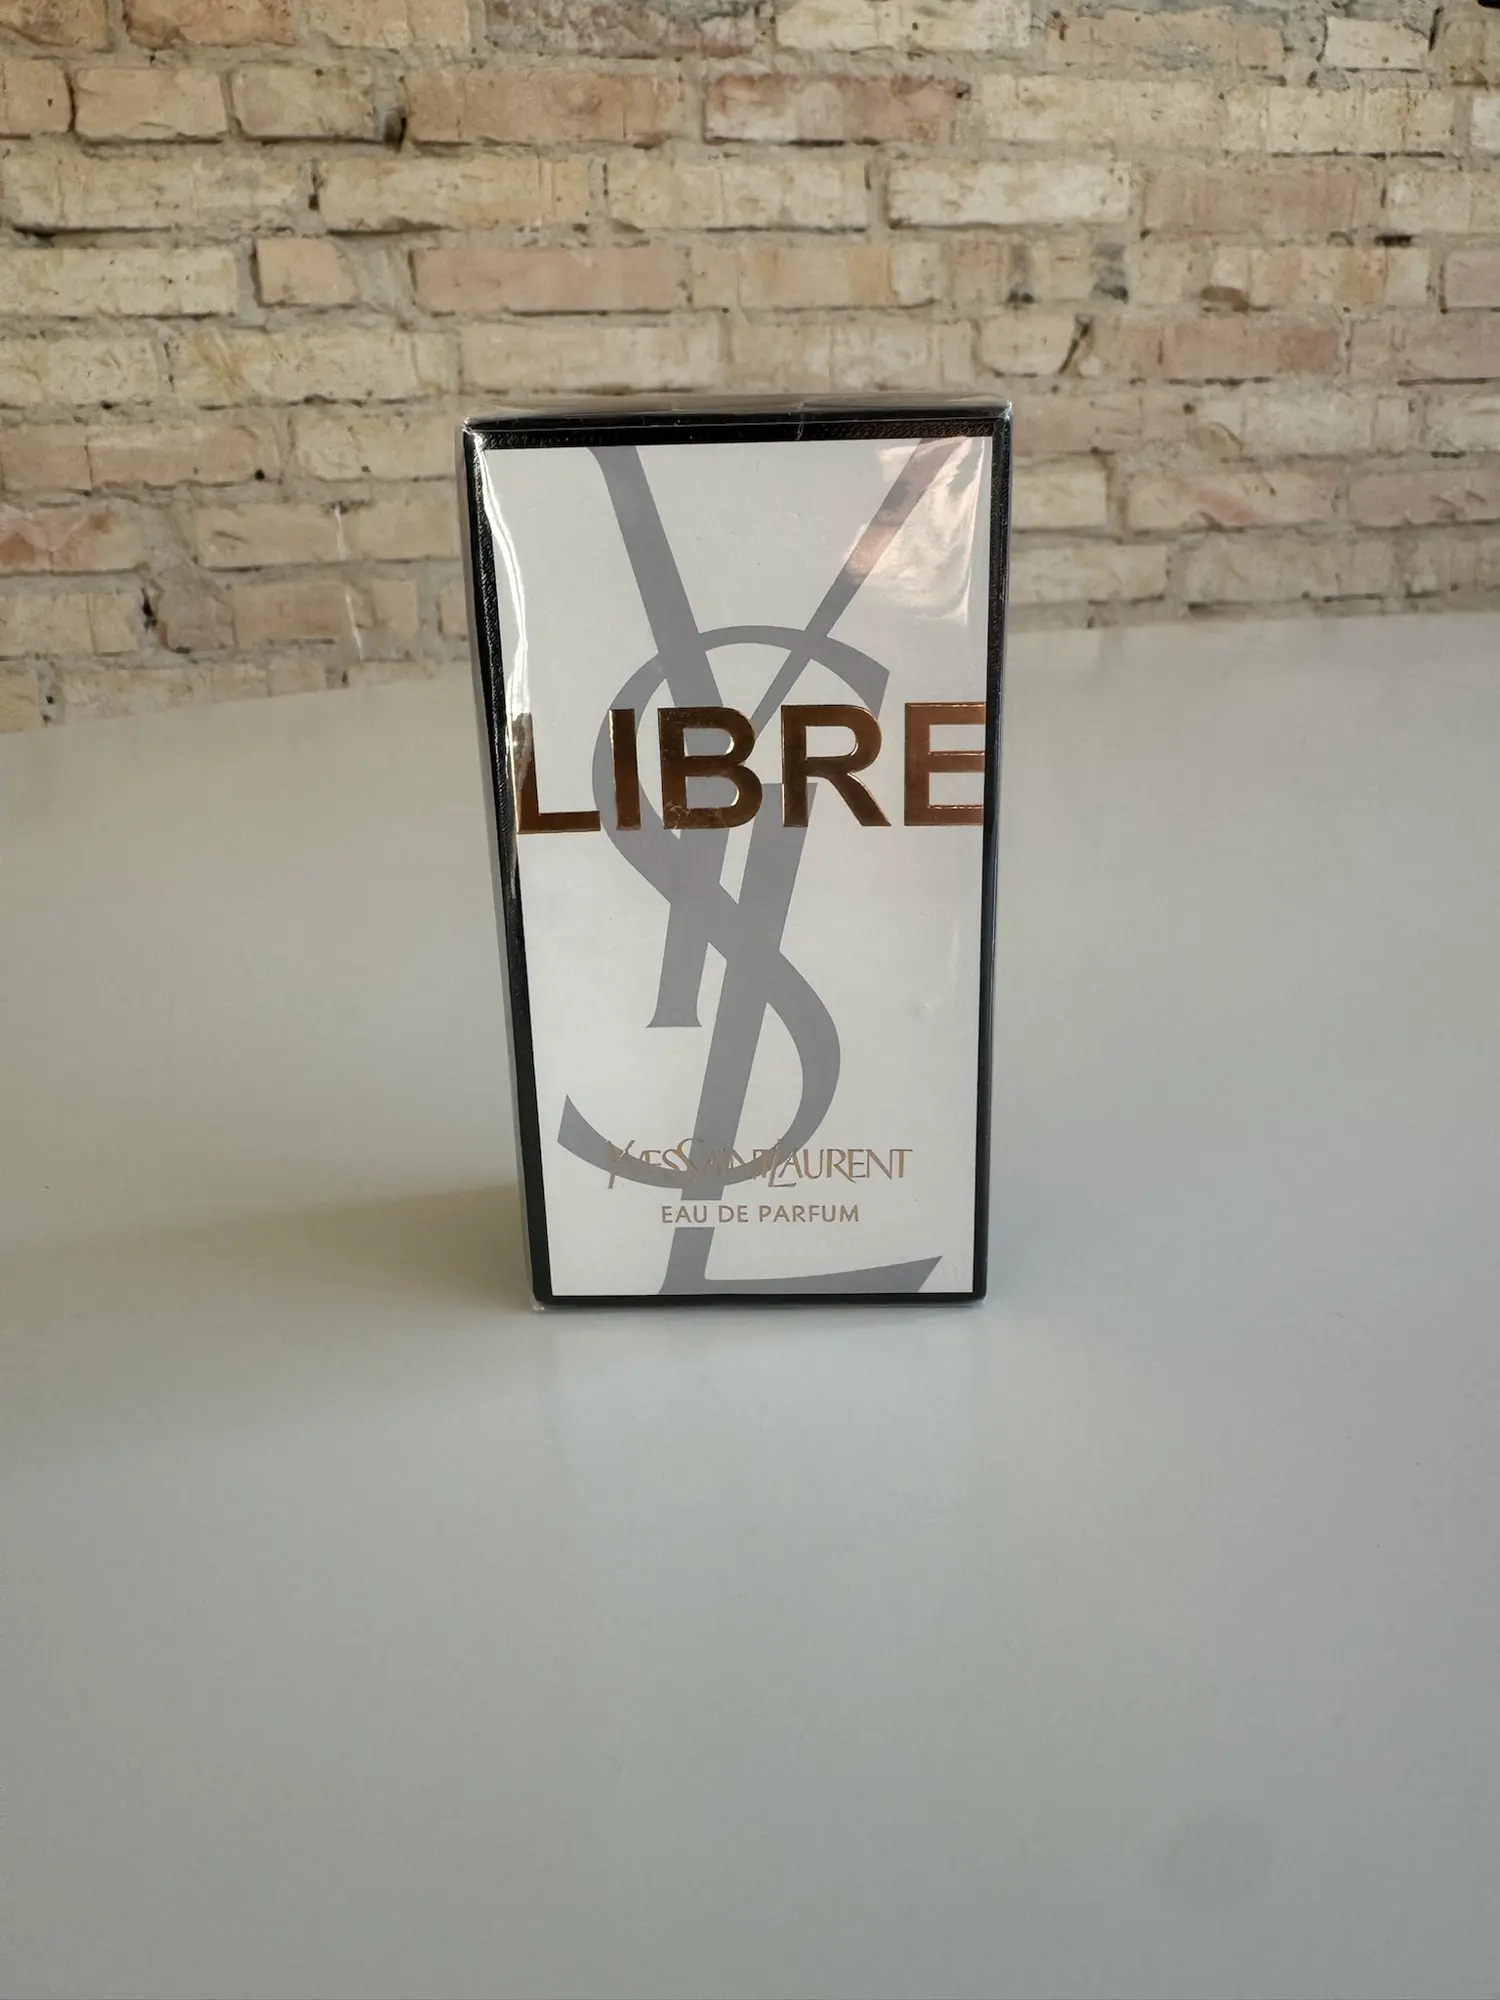 Yves Saint Laurent eau de parfum